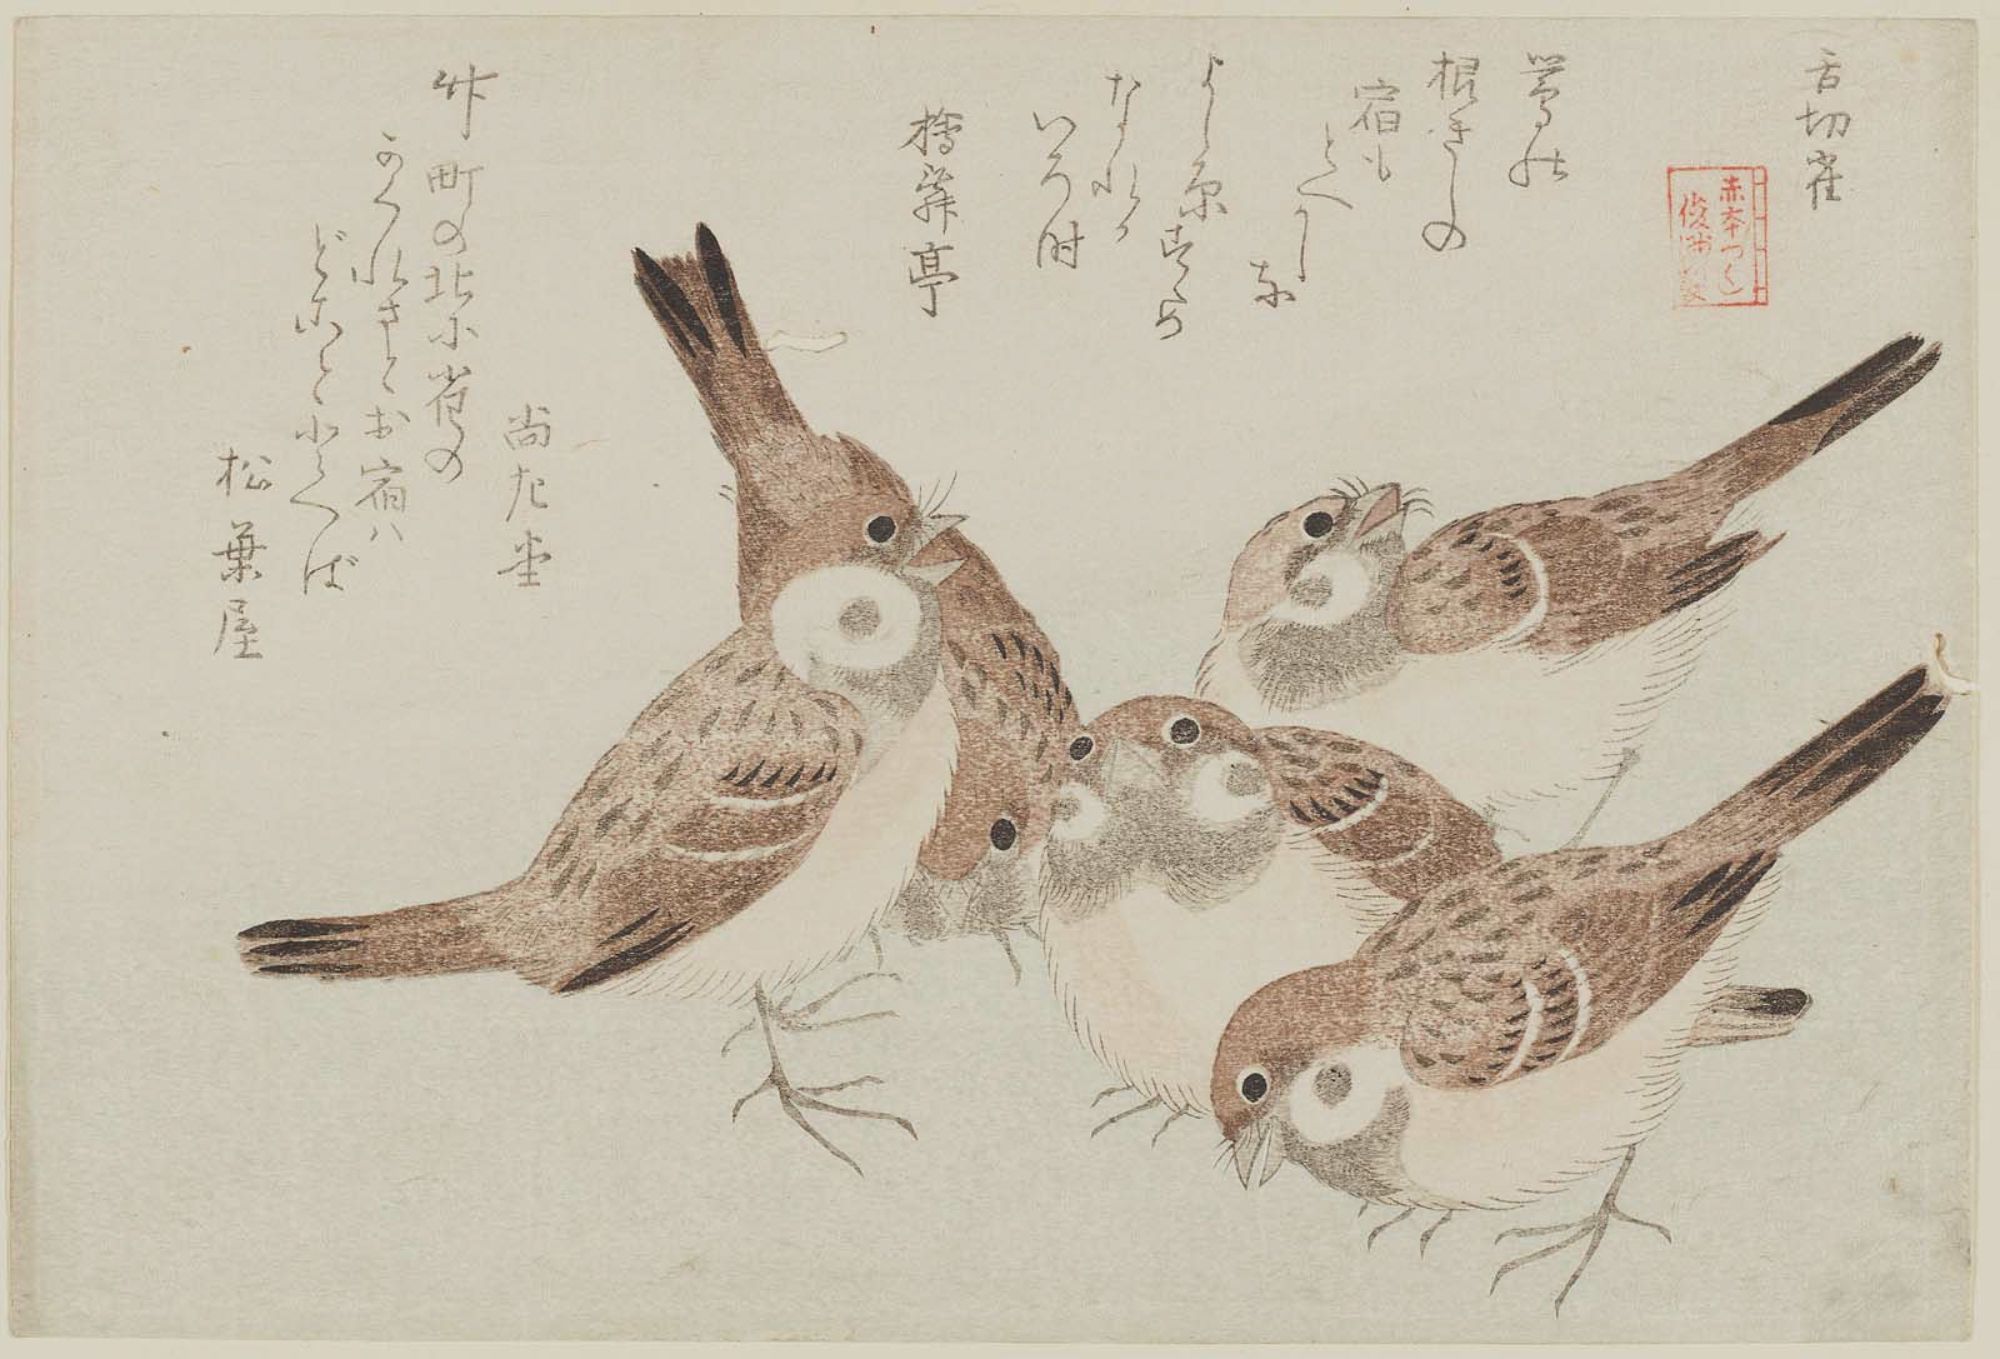 窪俊満: The Tongue-cut Sparrow (Shita-kiri suzume), from the